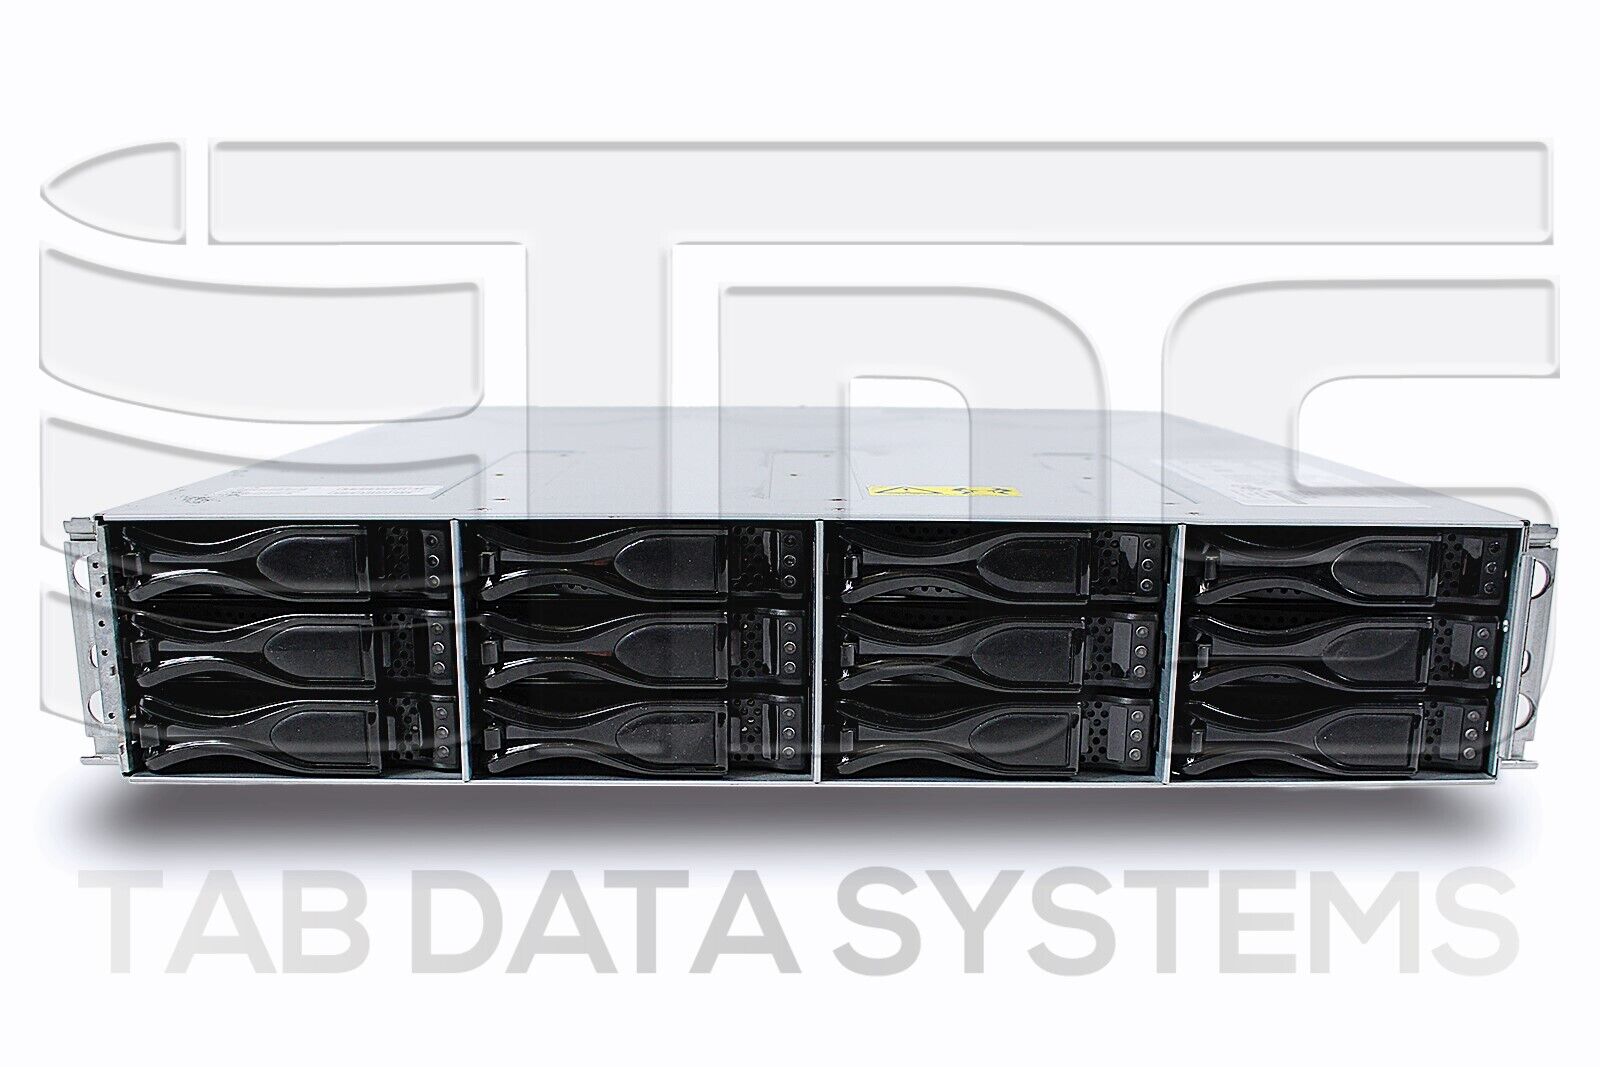 Sun Oracle StorageTek 2540 w/ 12x 450GB 15K HDD, 2x SAS Modules, 2x 530W PSU